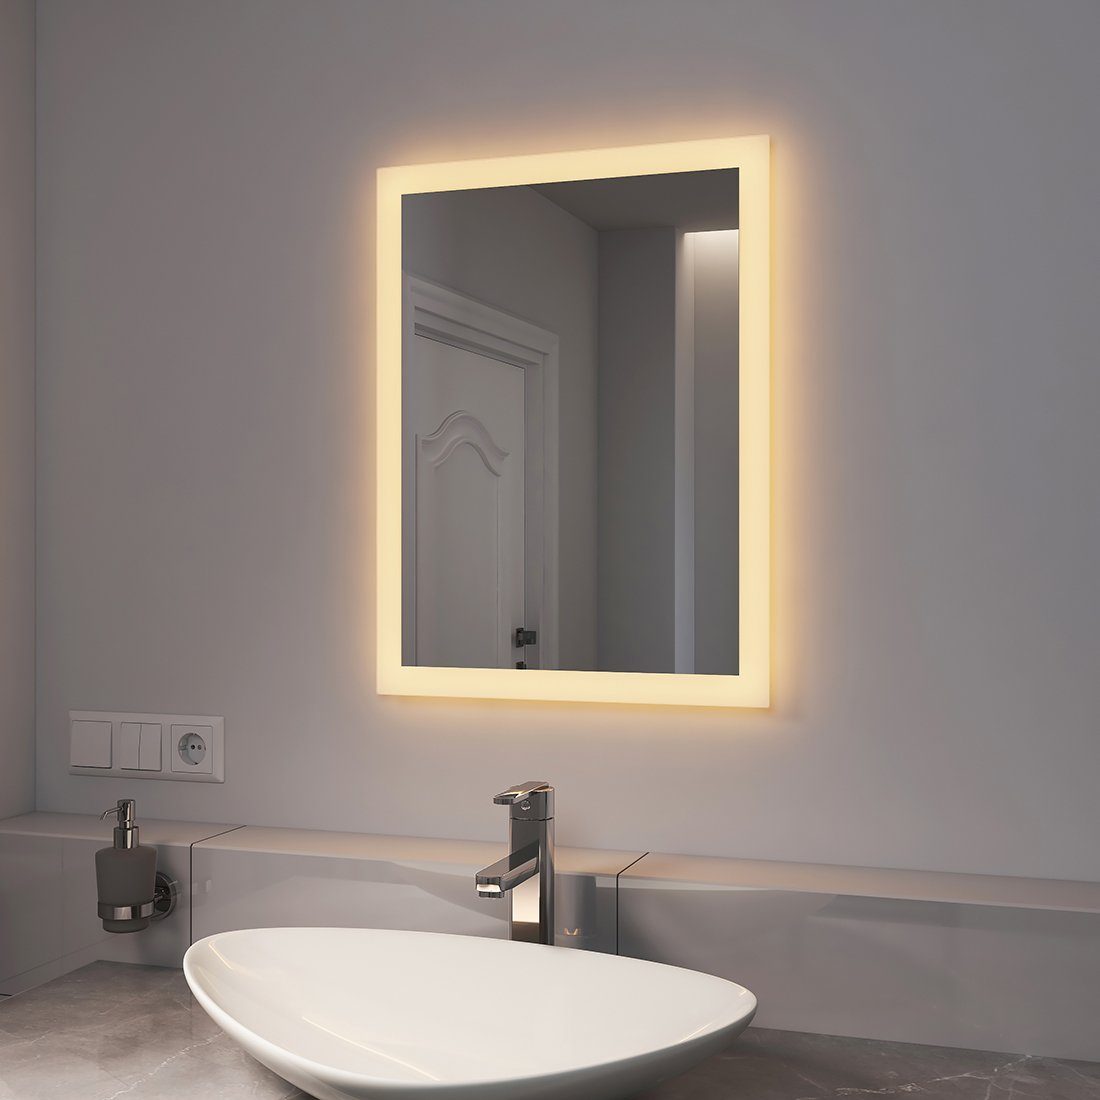 Beleuchtung 2 mit Lichtfarbe Beschlagfrei, Warmweiß/Kaltweiß Wandspiegel, Badspiegel LED Badspiegel Badezimmerspiegel EMKE mit